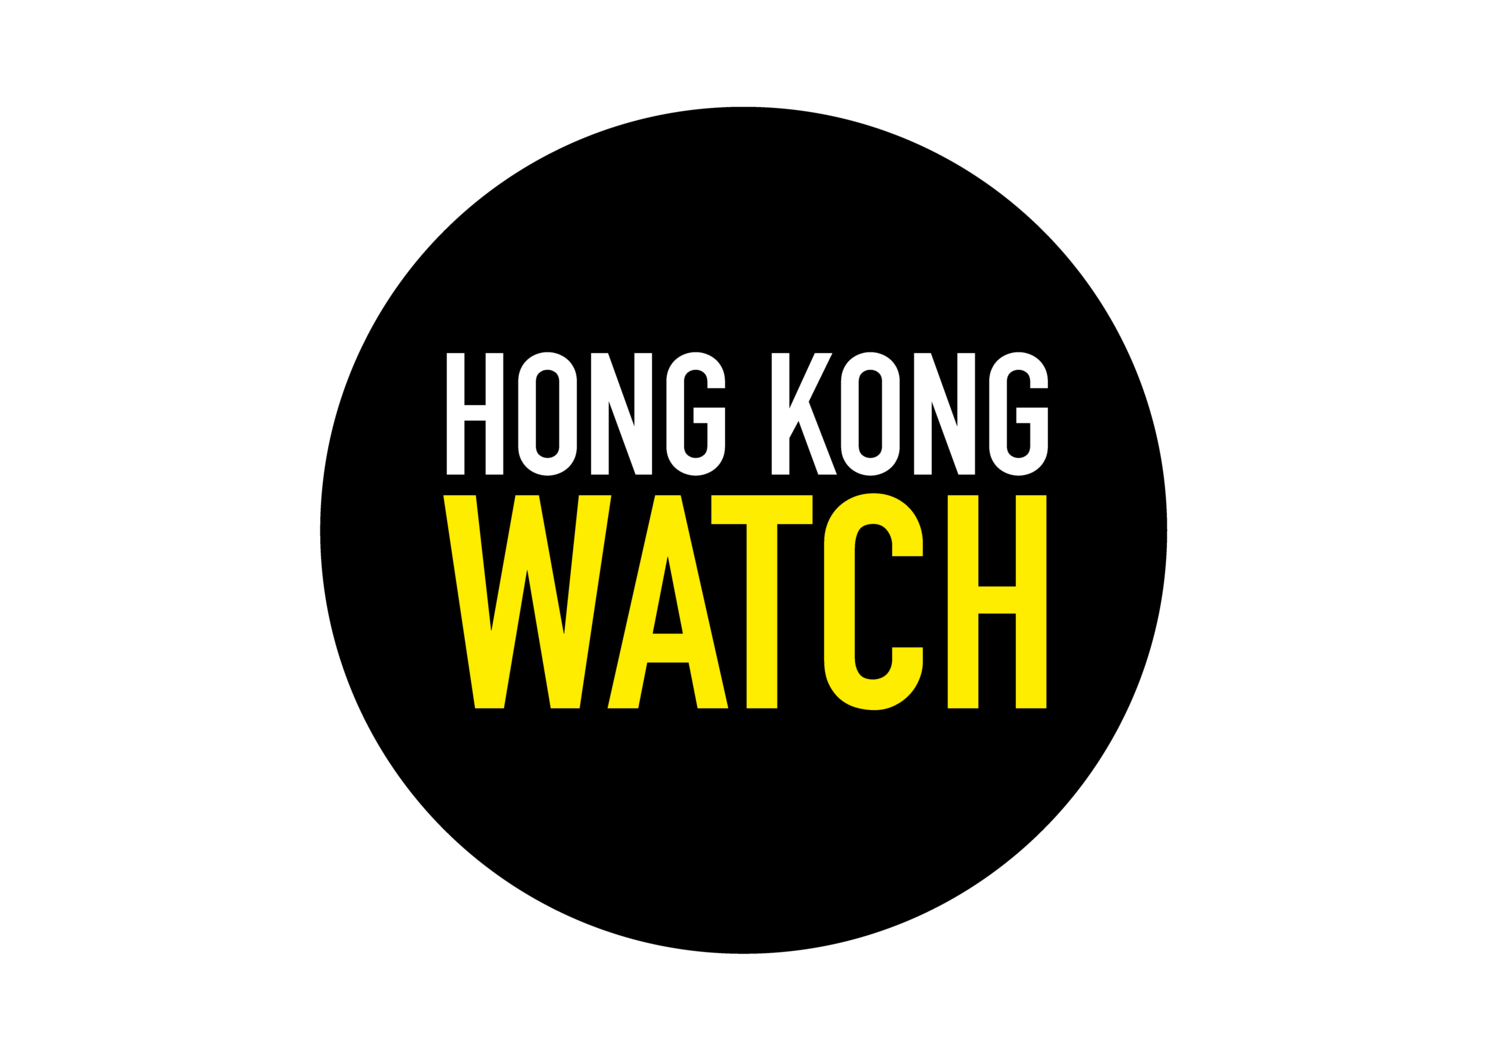 Hong Kong Watch logo